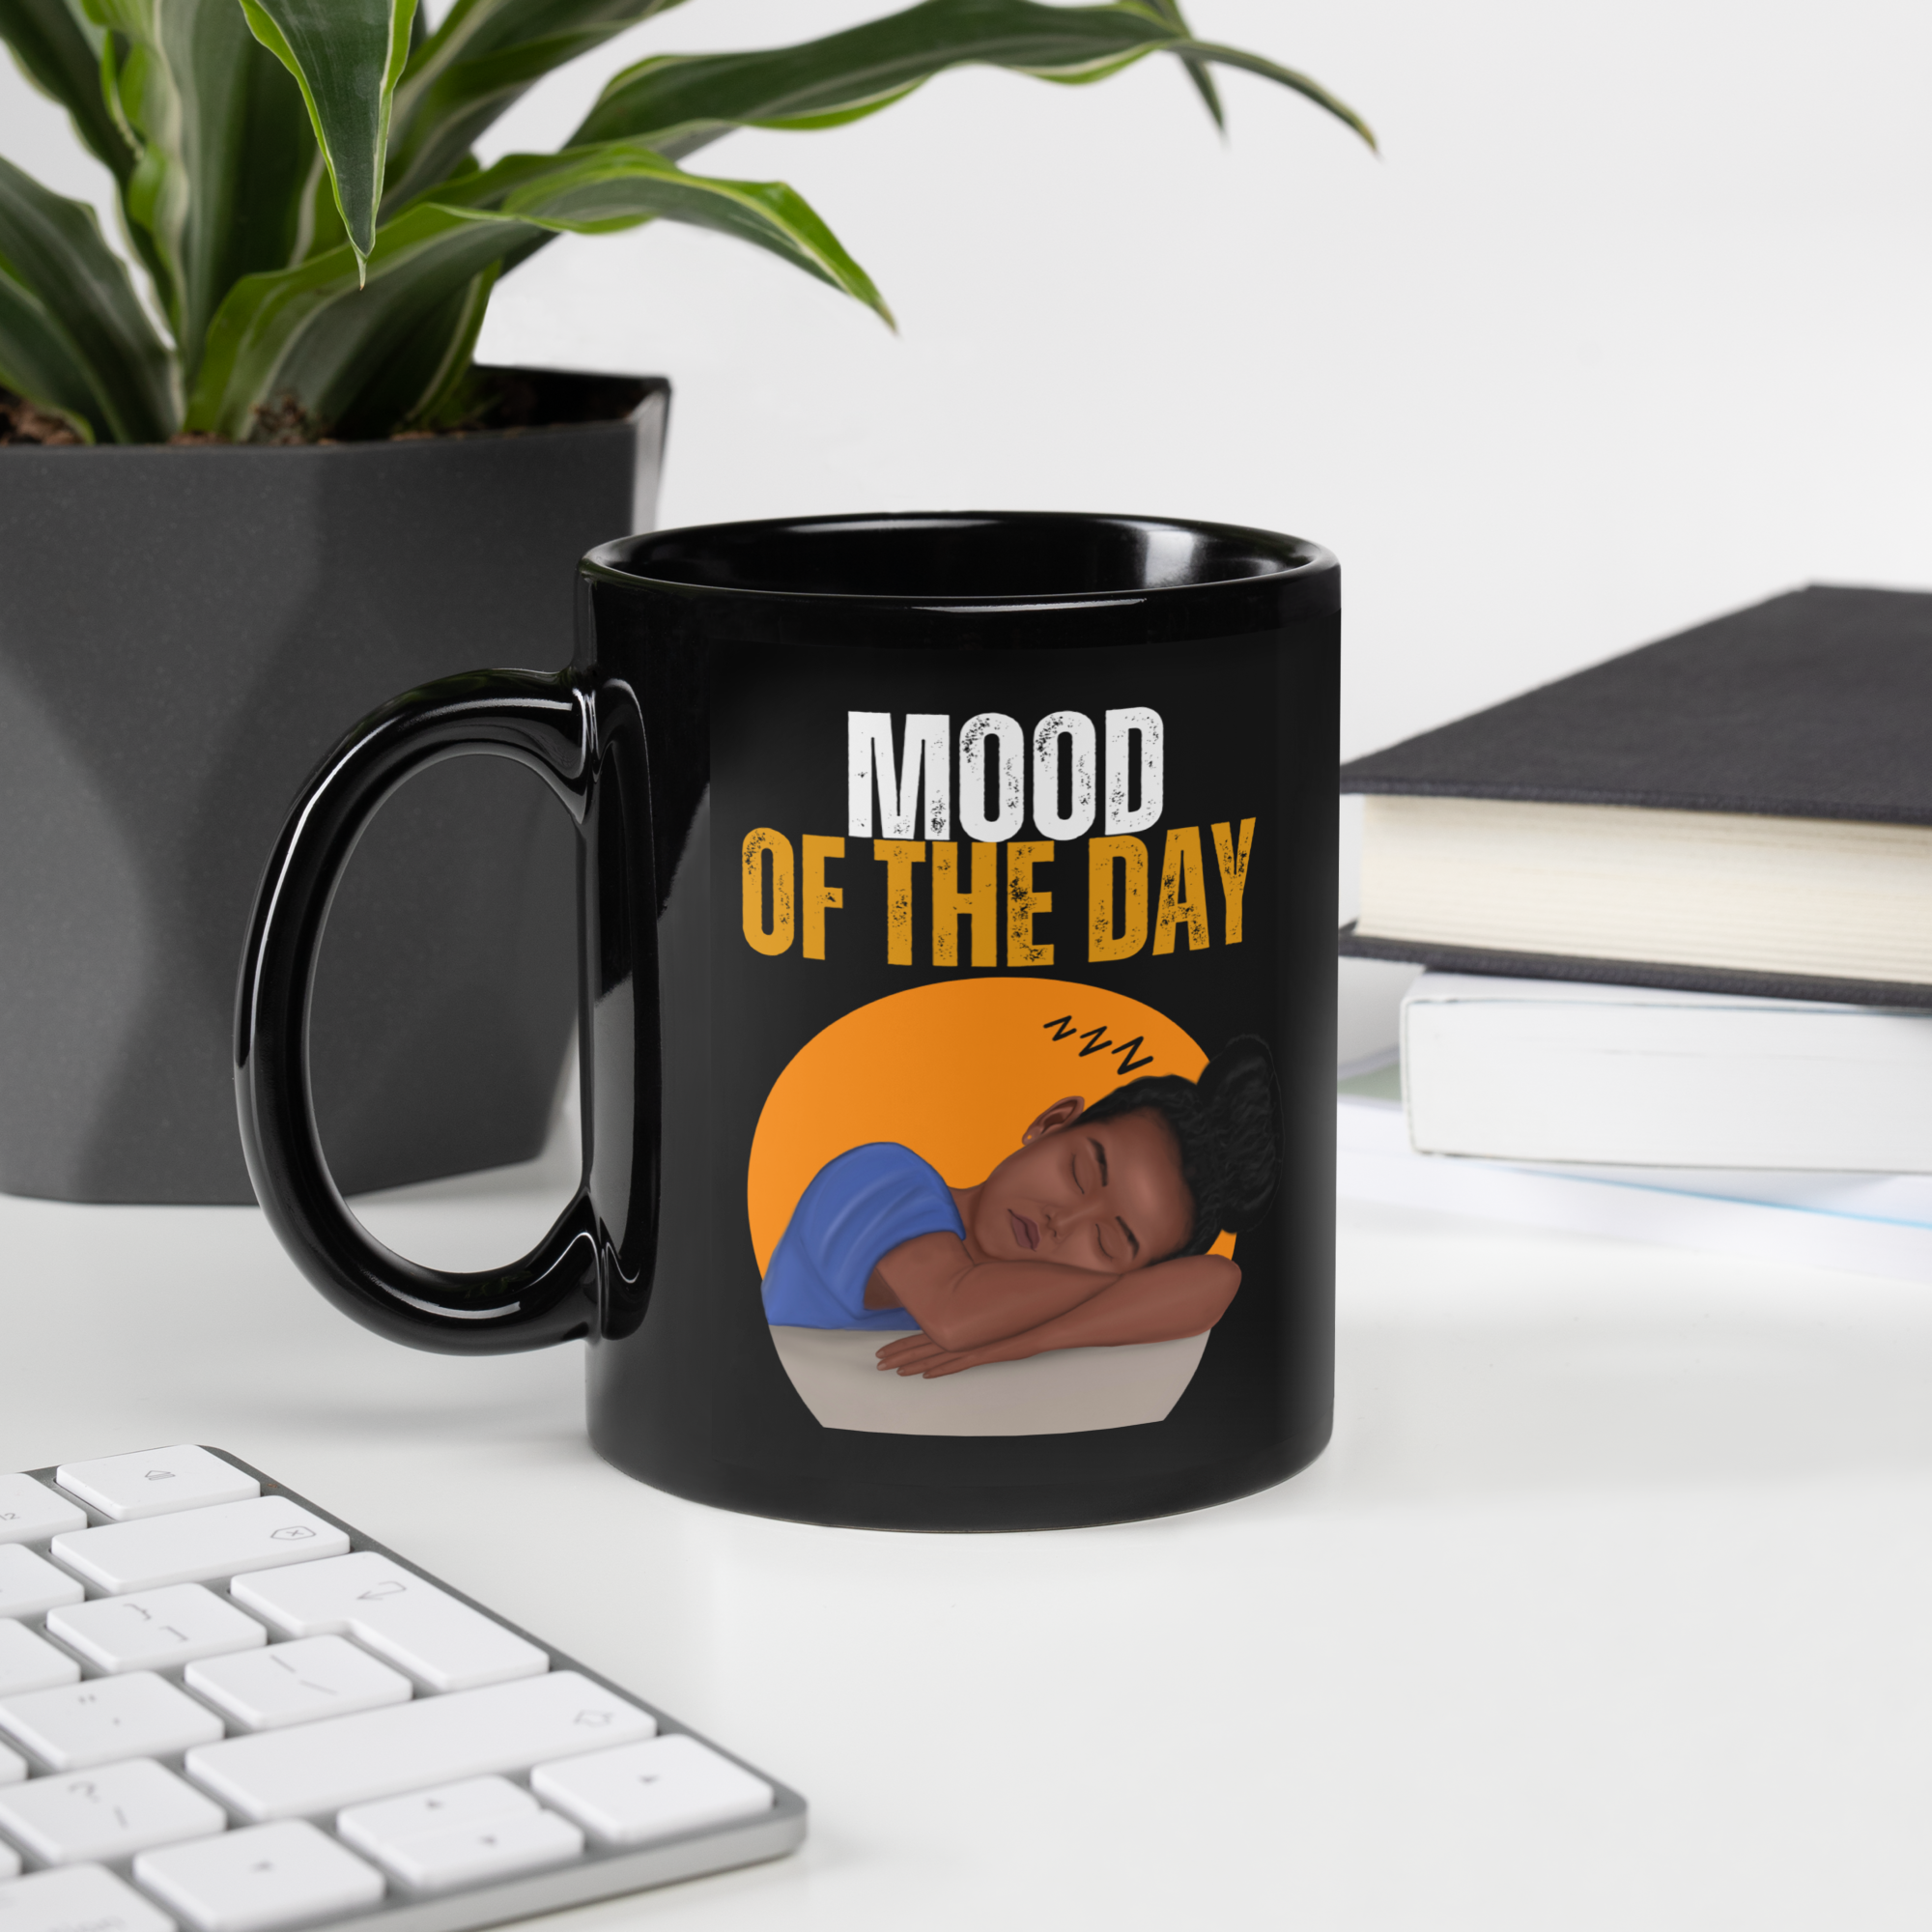 Mood of the Day Mug - Tired (Black Girl)